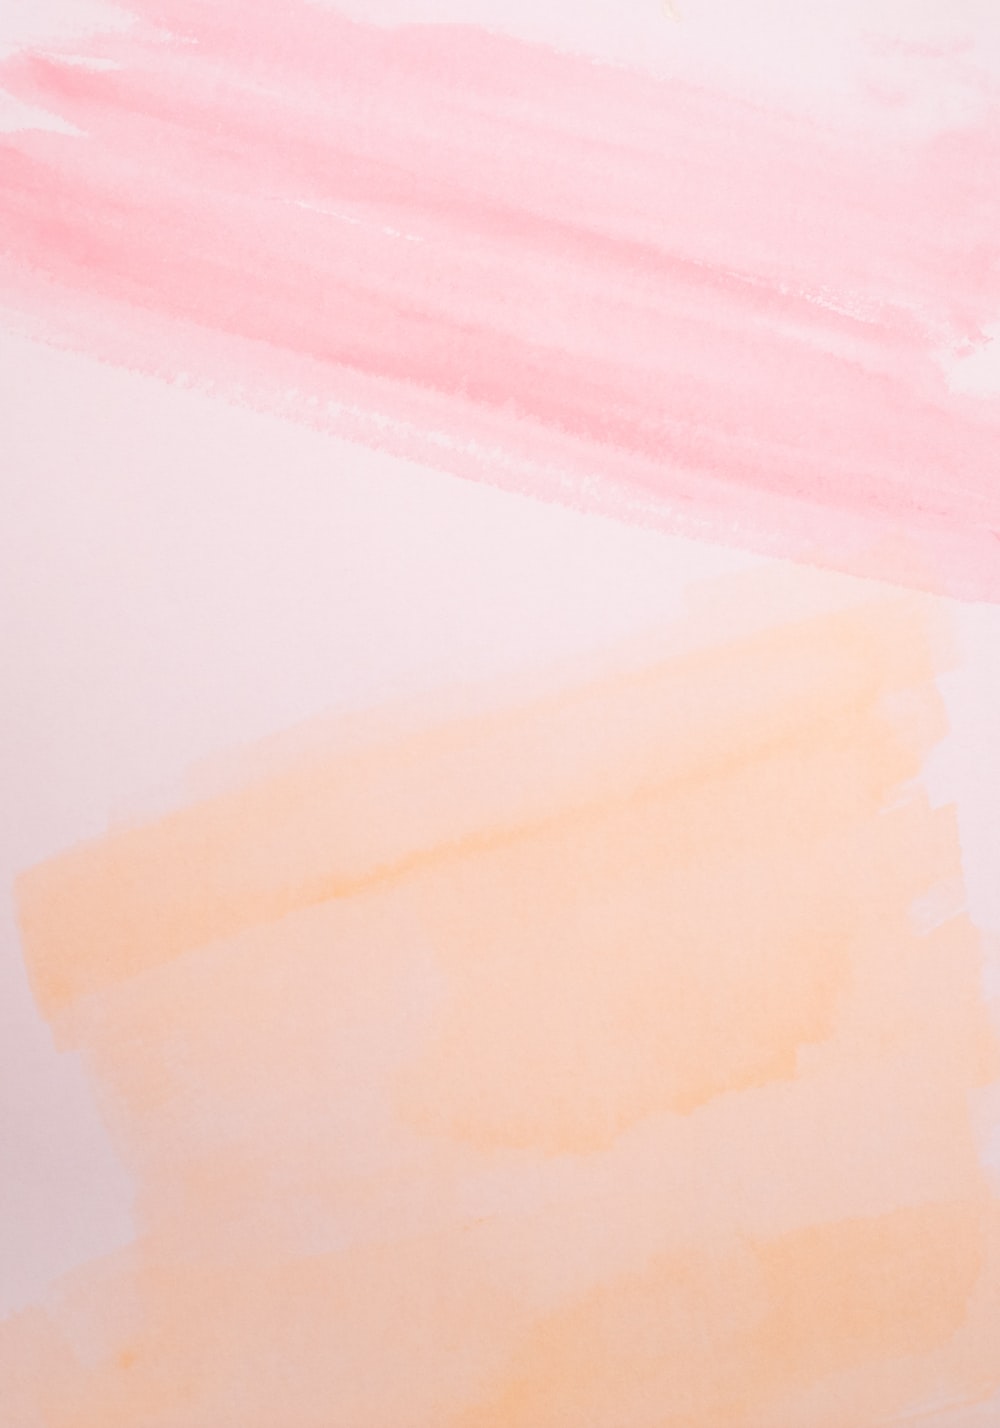 Baby Blue Pastel Plain Background & Wallpaper - SlidesCorner